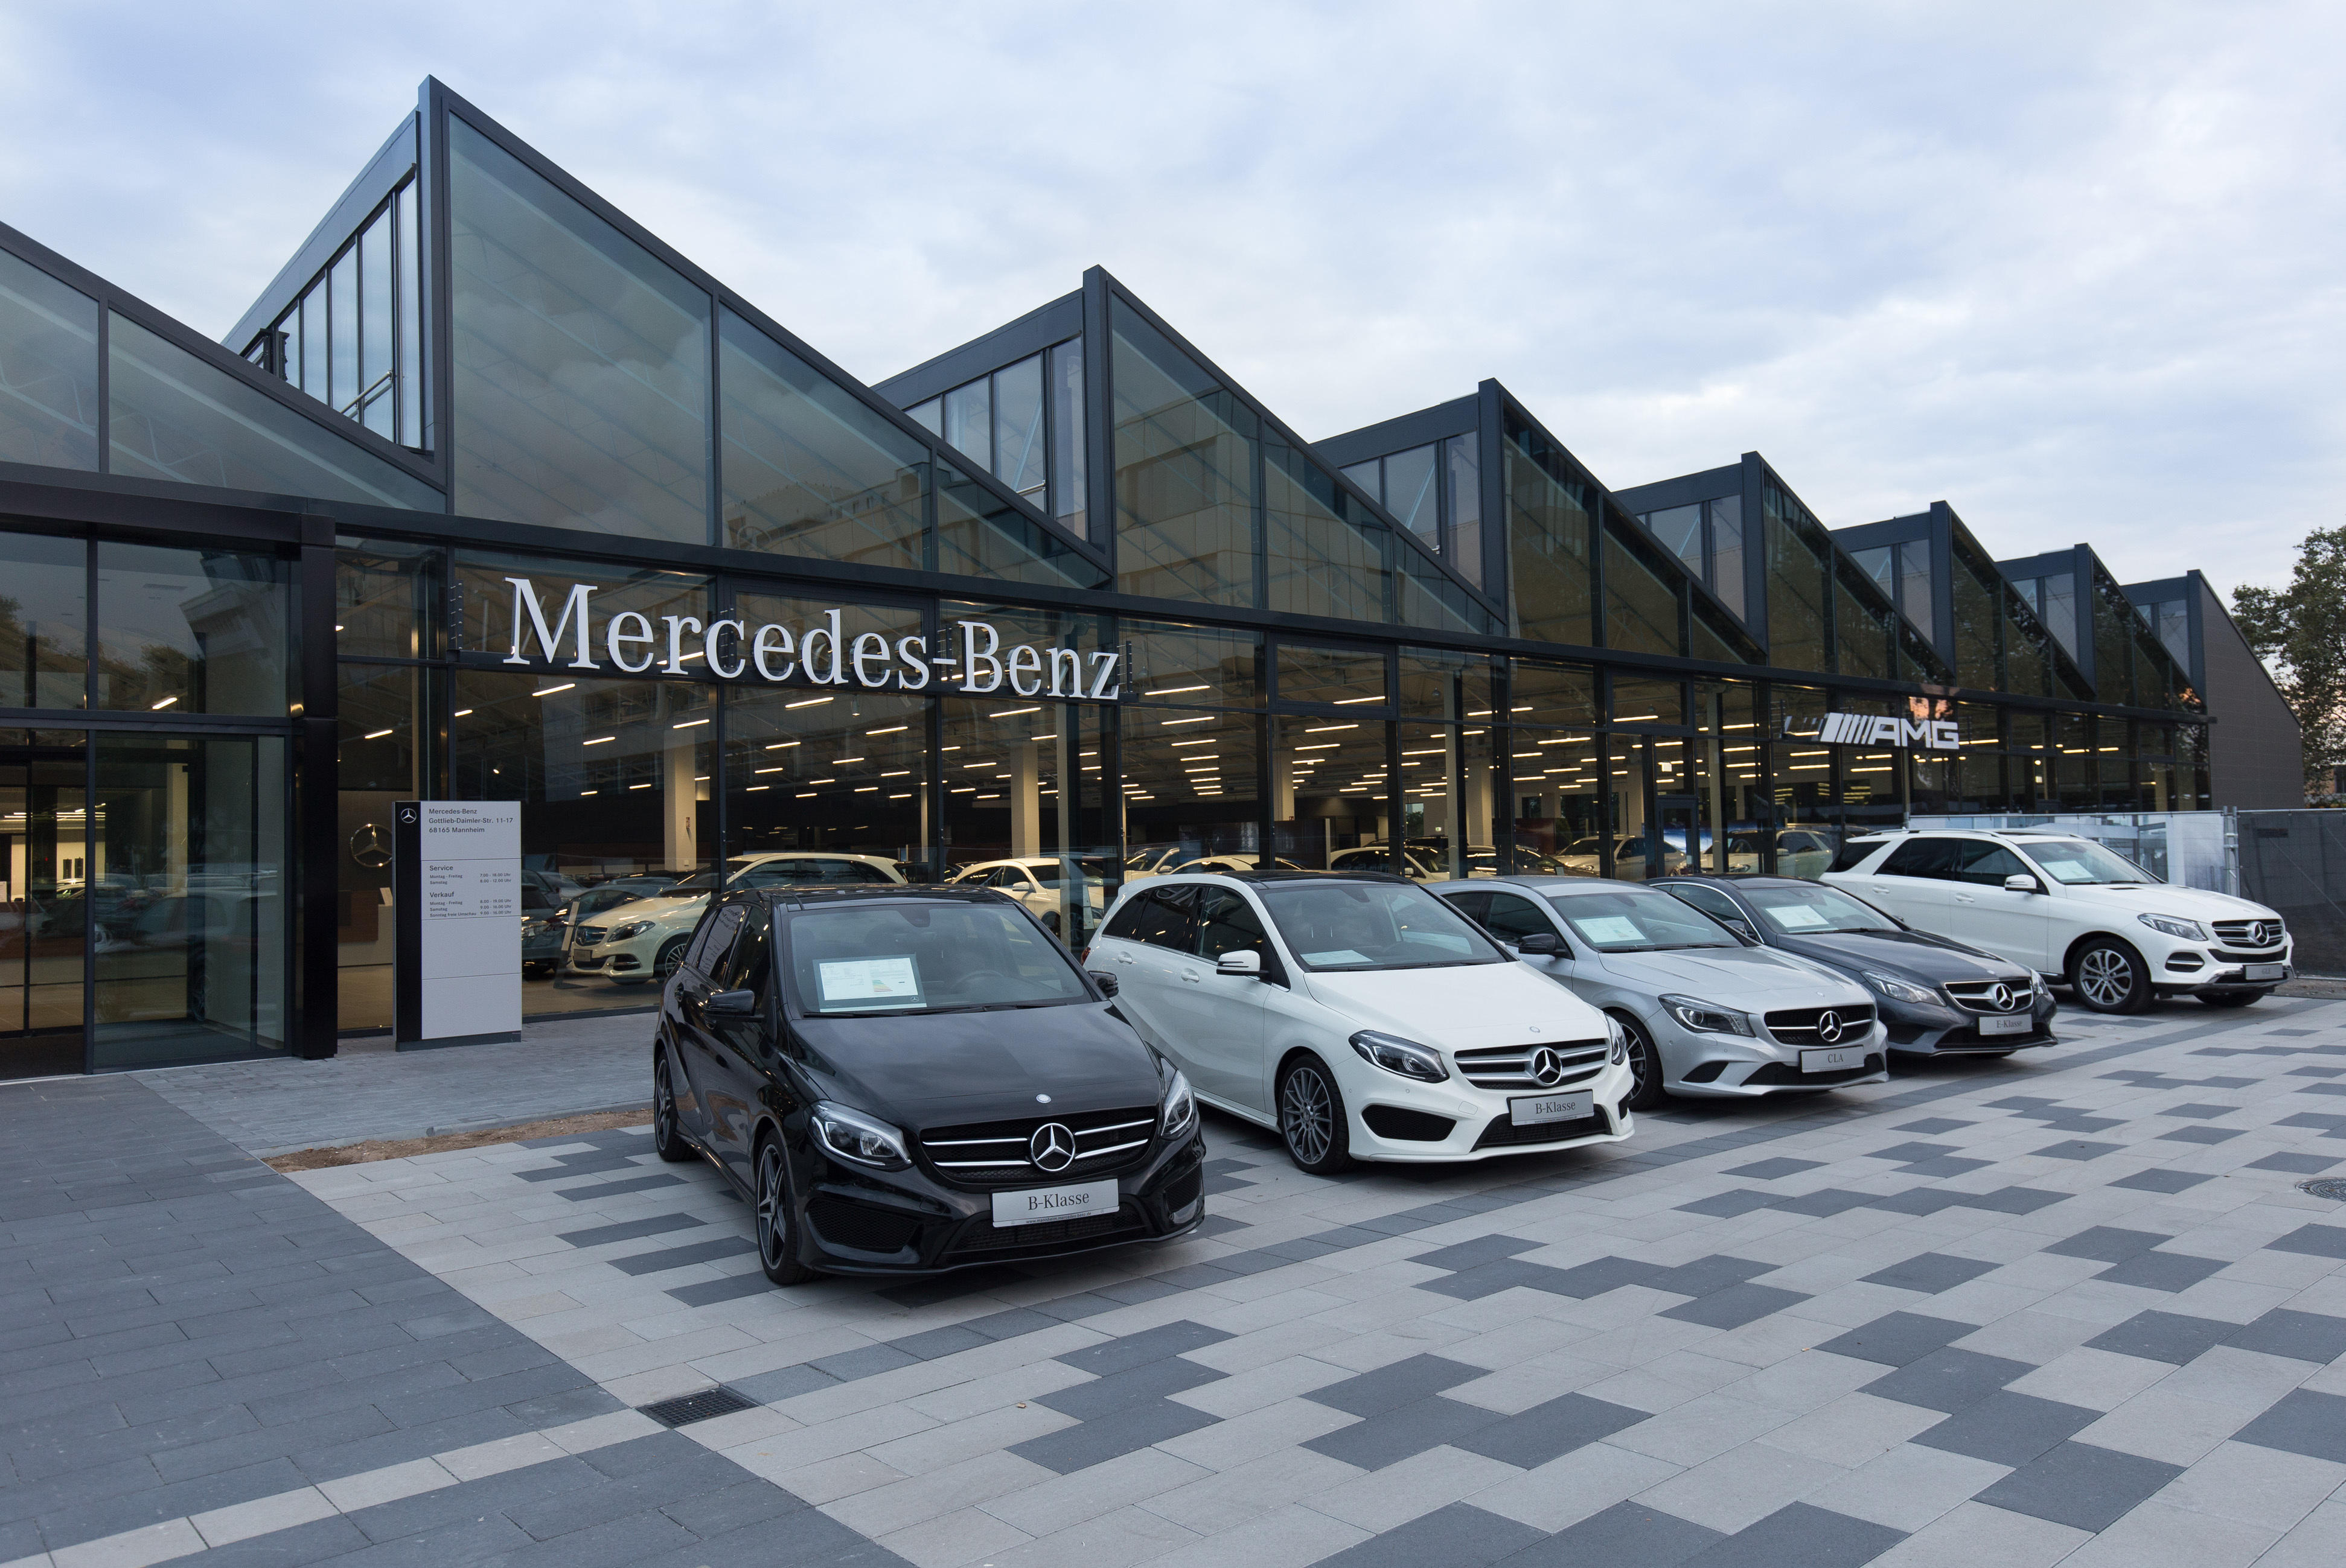 Kundenbild groß 1 Mercedes-Benz Niederlassung Mannheim